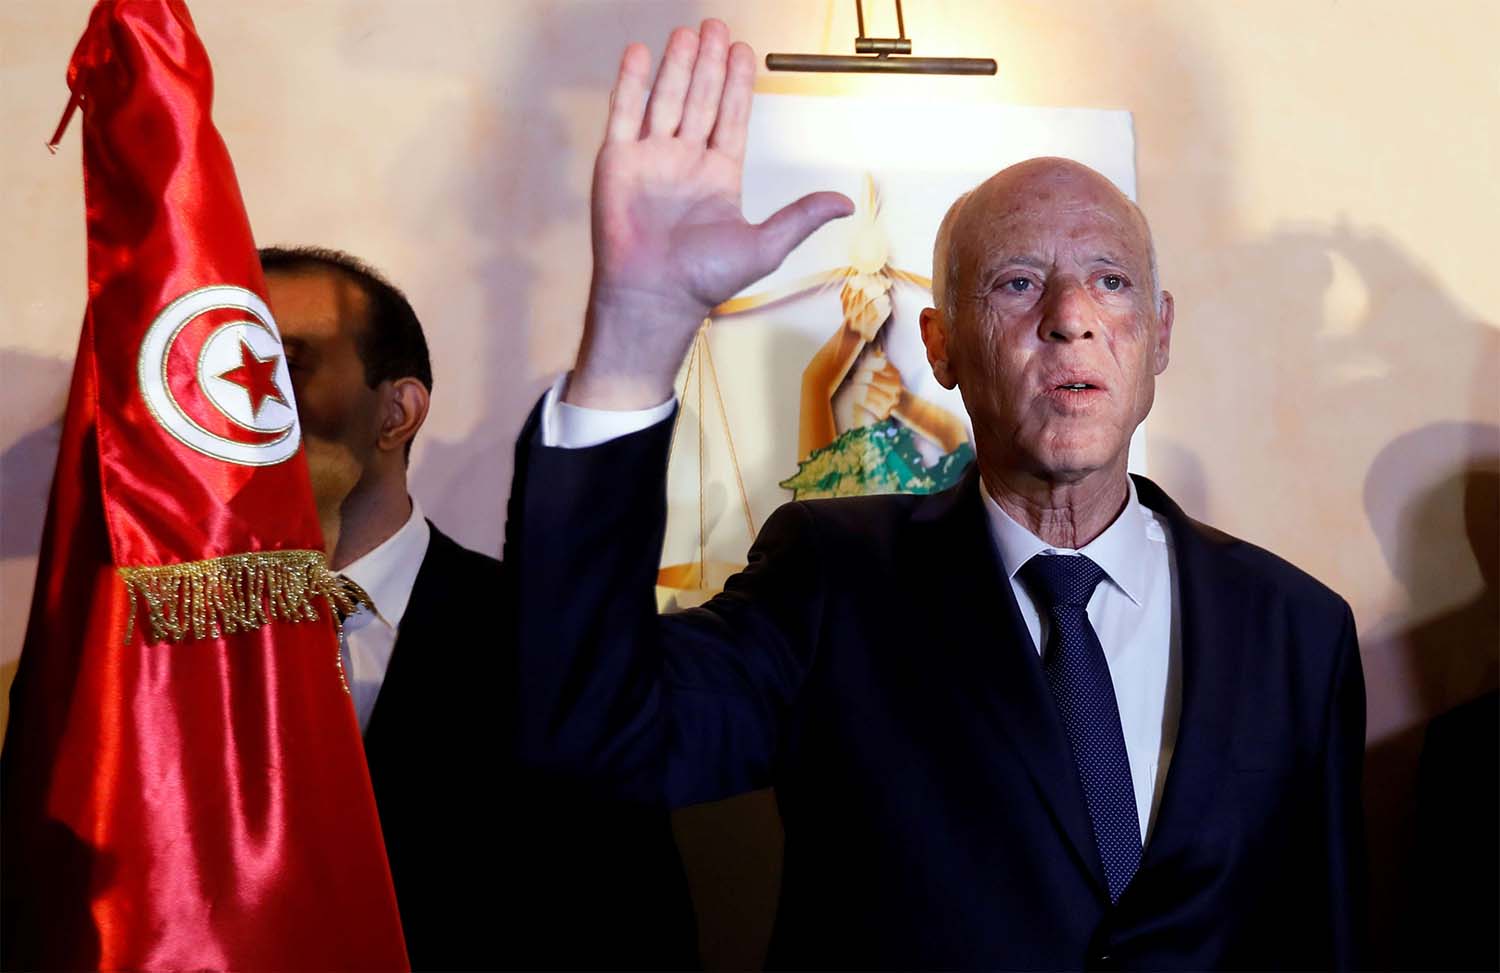 Kais Saied, Tunisia's new president